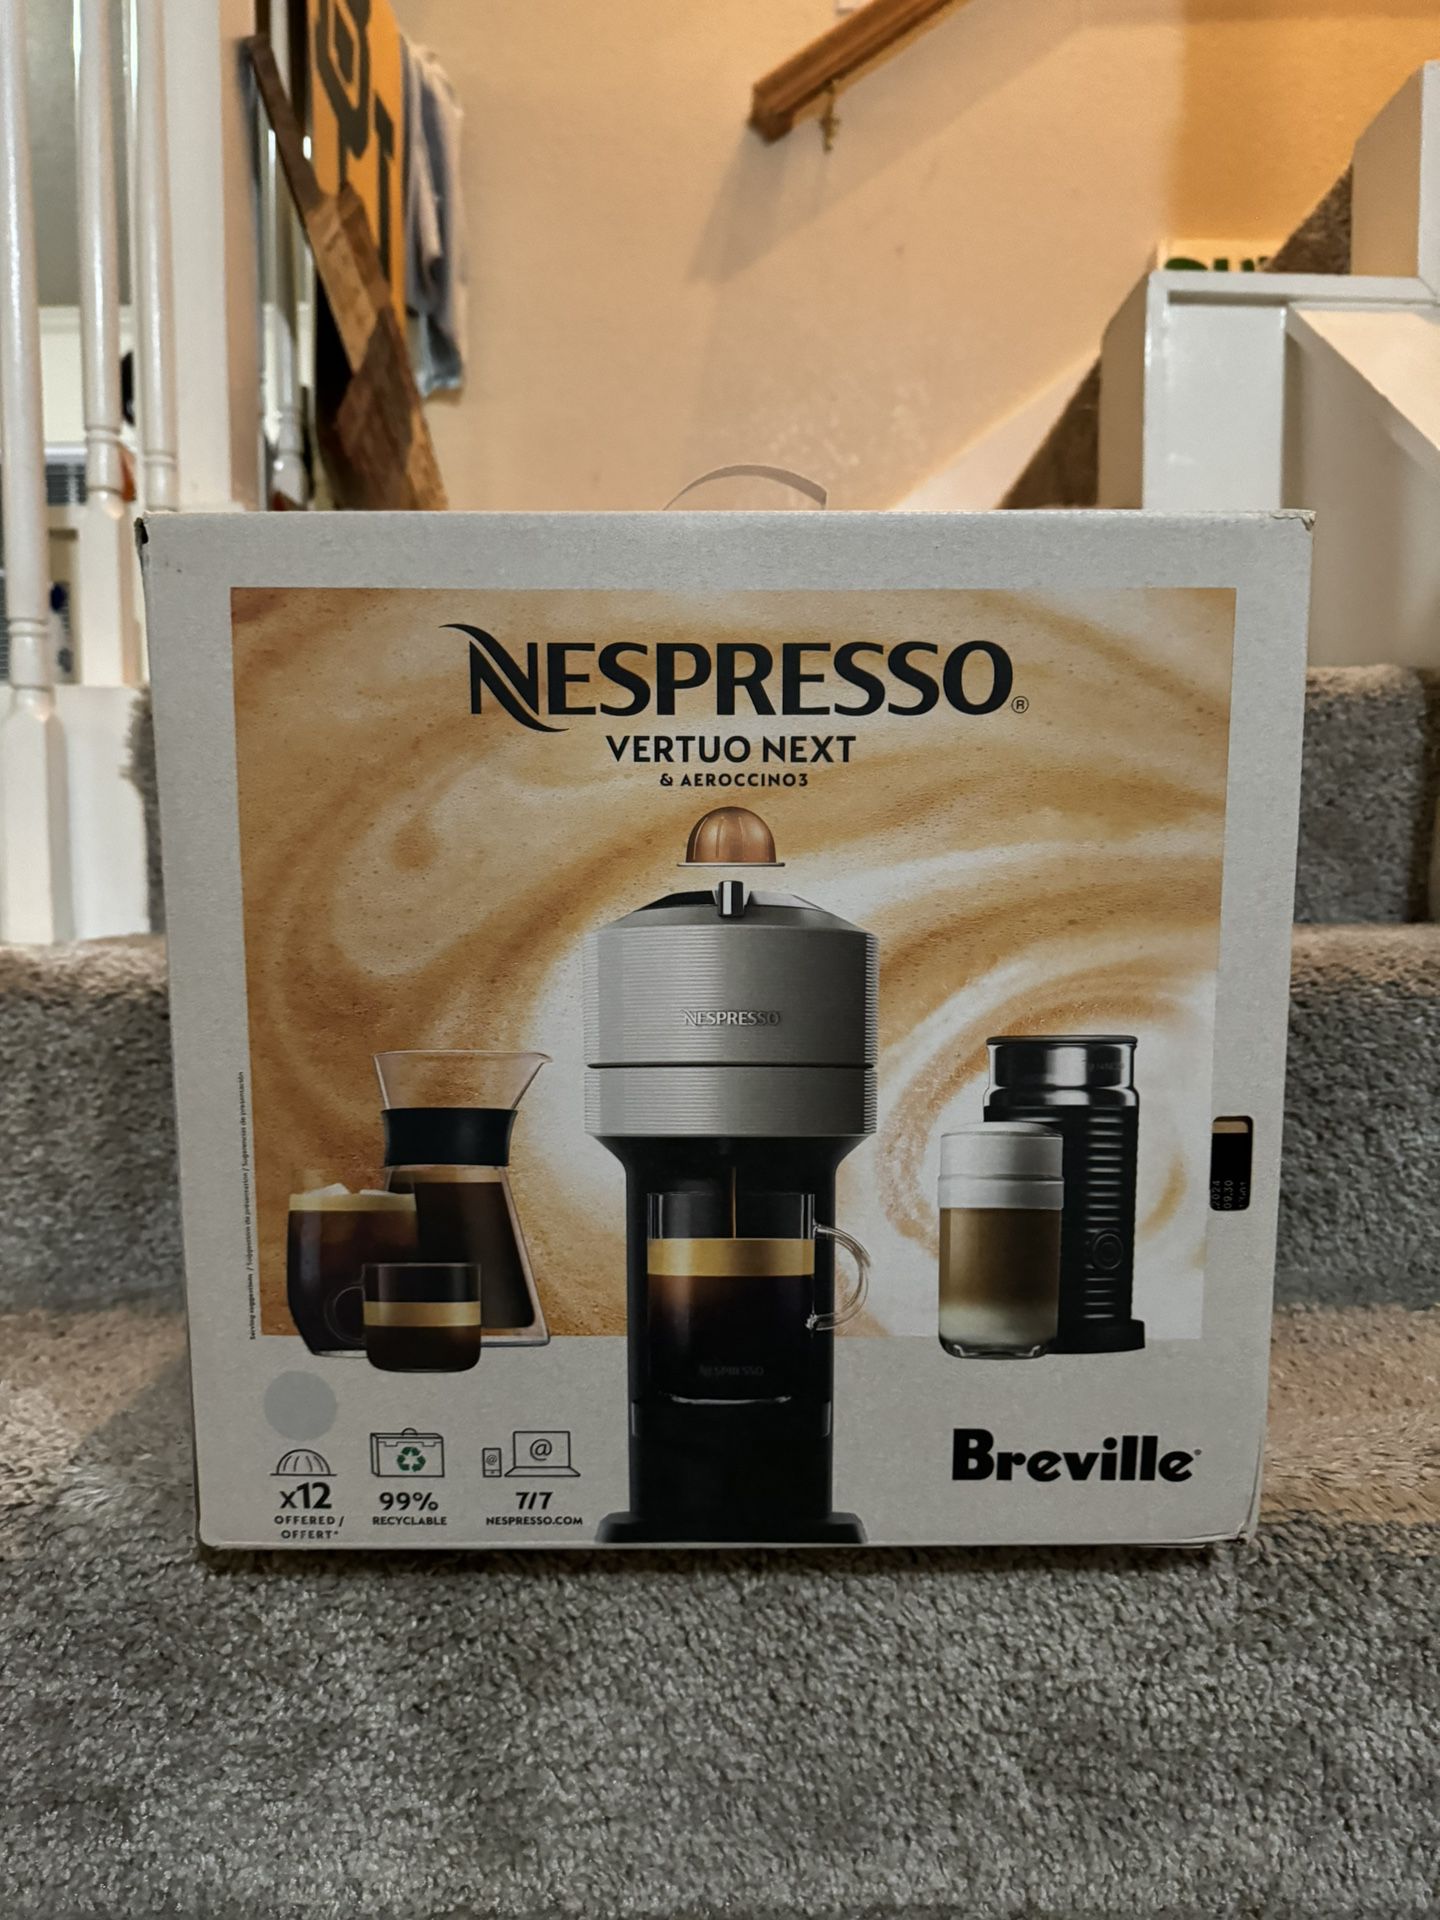 Brand New Nespresso Vertuo Next & Aeroccino3 by Breville